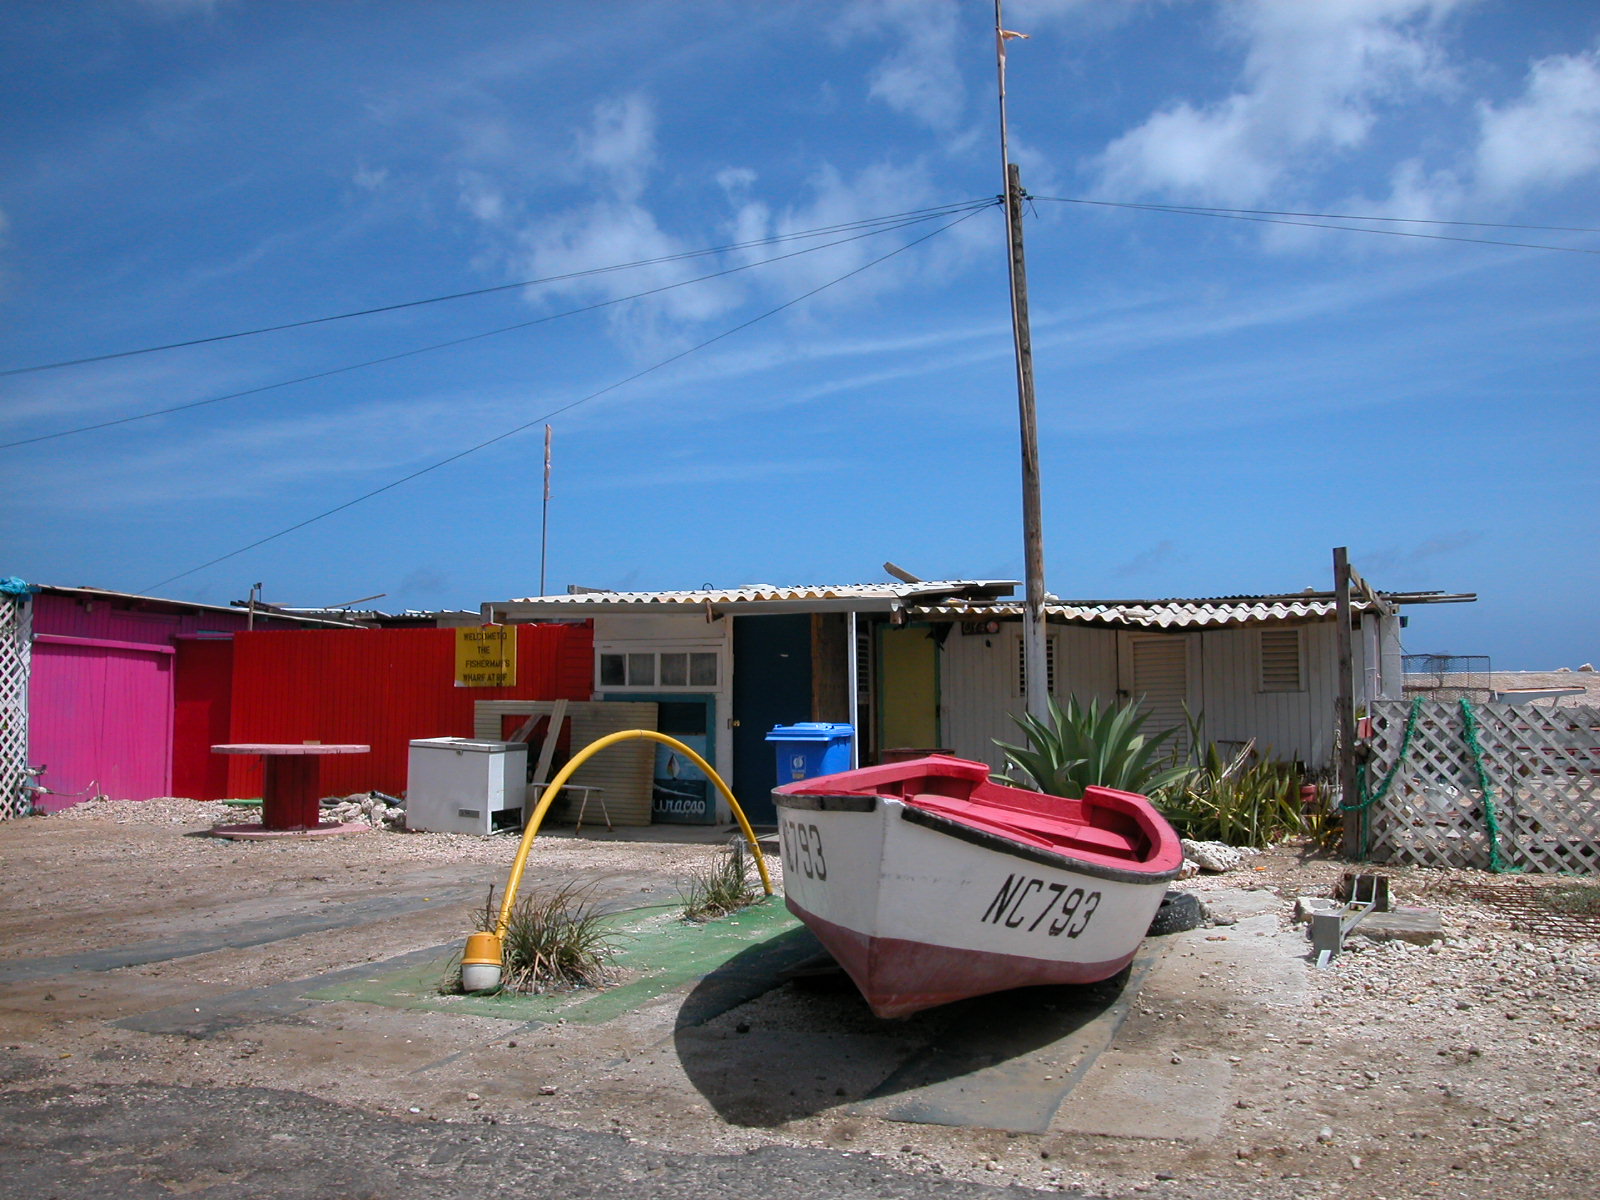 jacco curacao boat shed sheds shacks